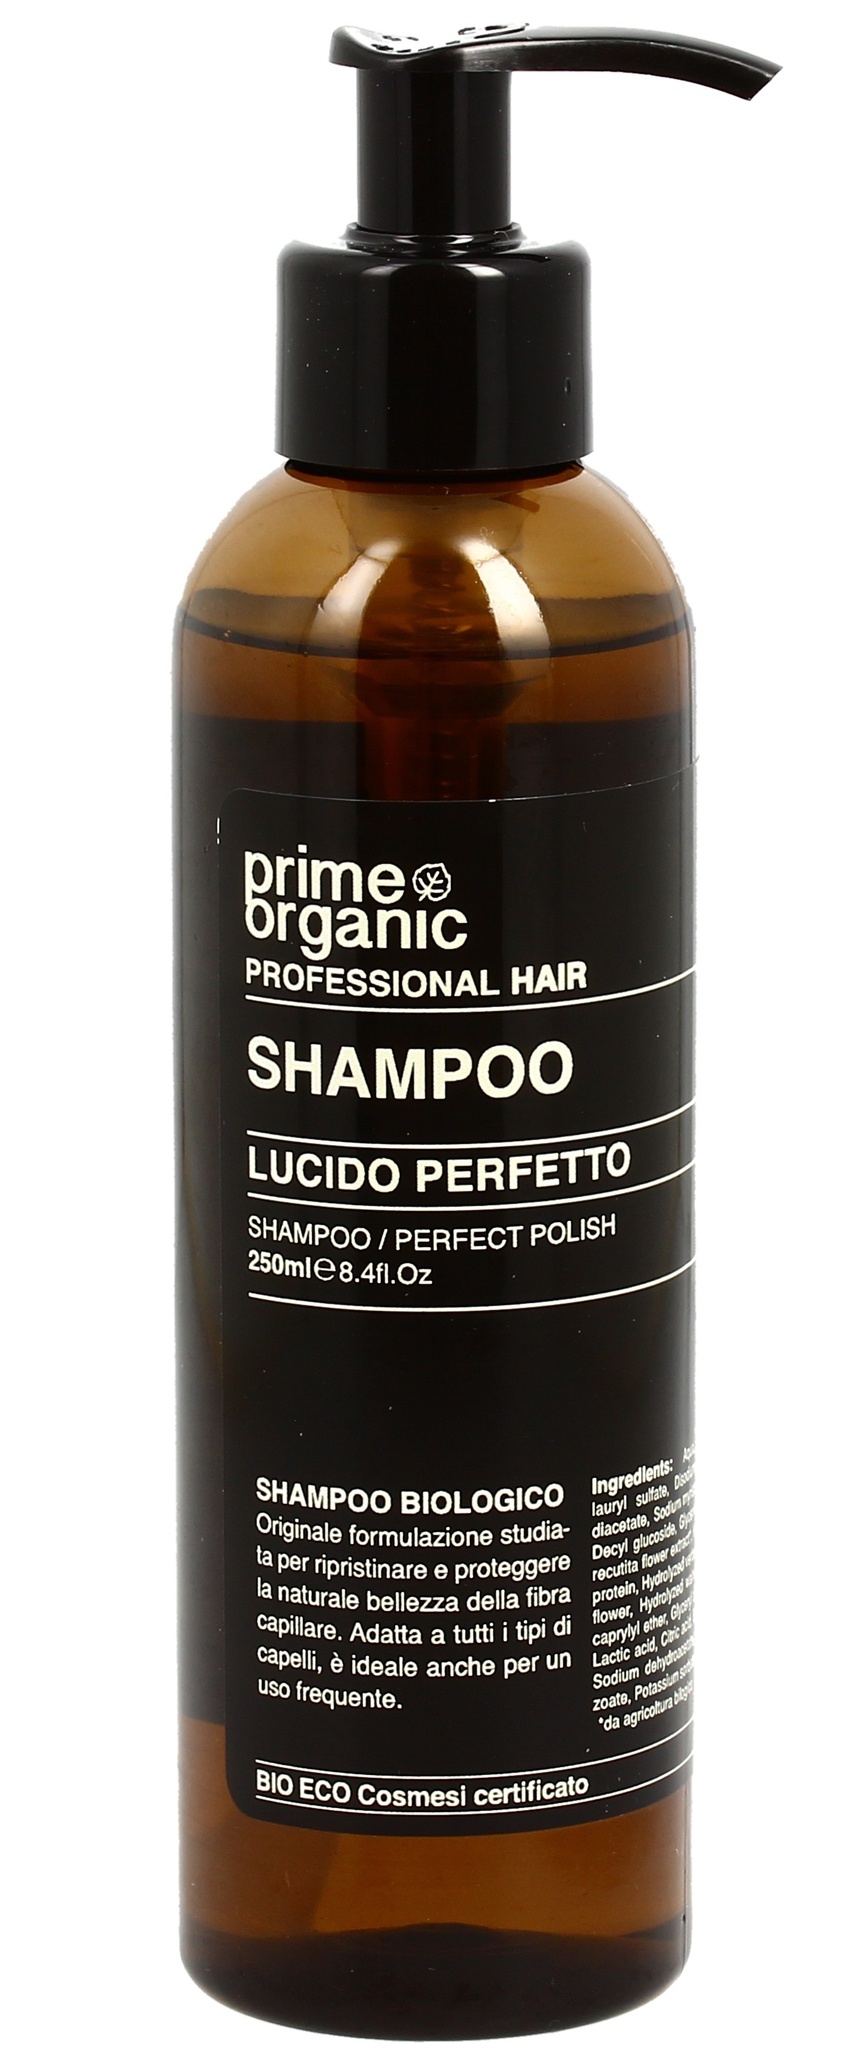 PrimeOrganic Shampoo Lucido Perfetto